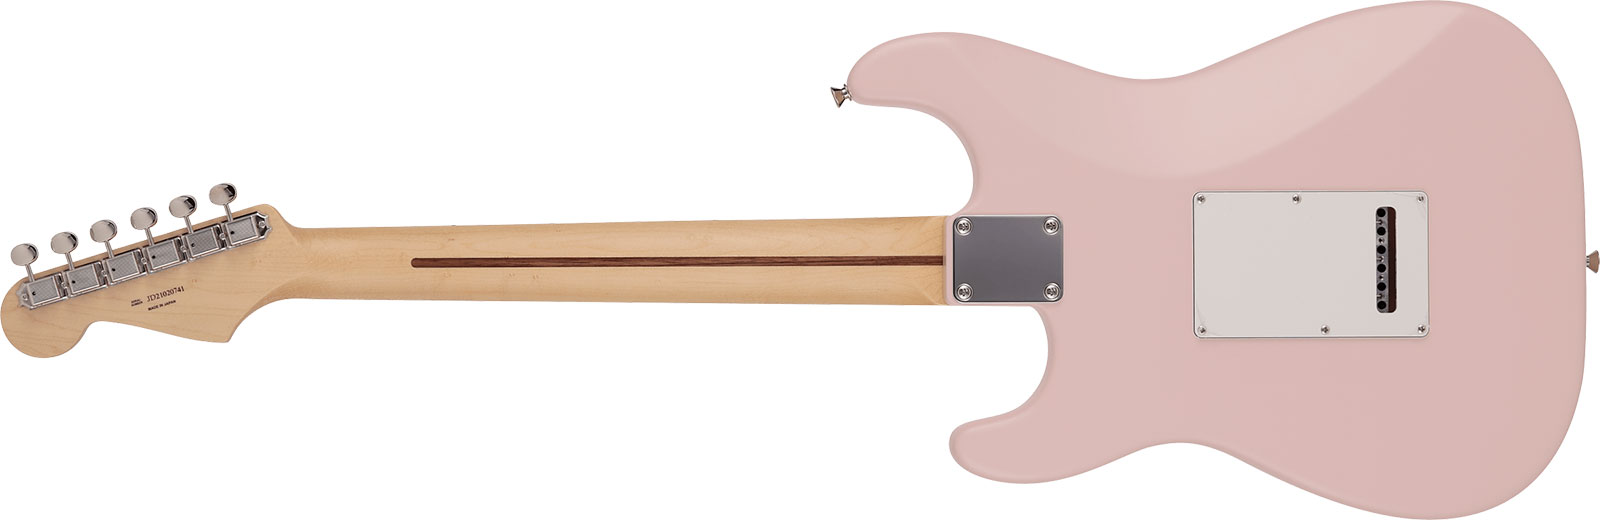 Fender Strat Junior Mij Jap 3s Trem Rw - Satin Shell Pink - Elektrische gitaar voor kinderen - Variation 1